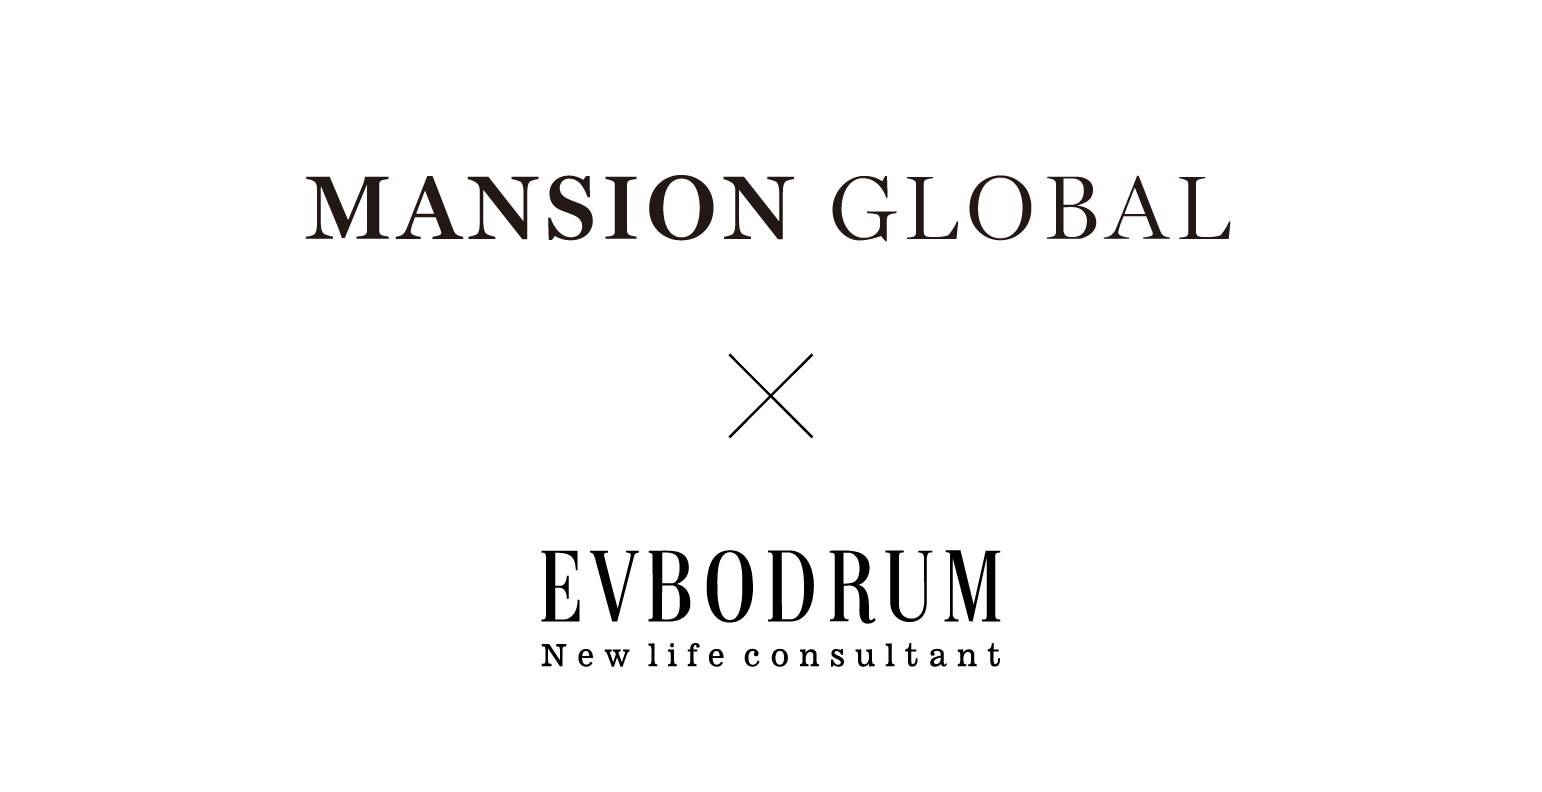 EVBodrum in Mansion Global '20